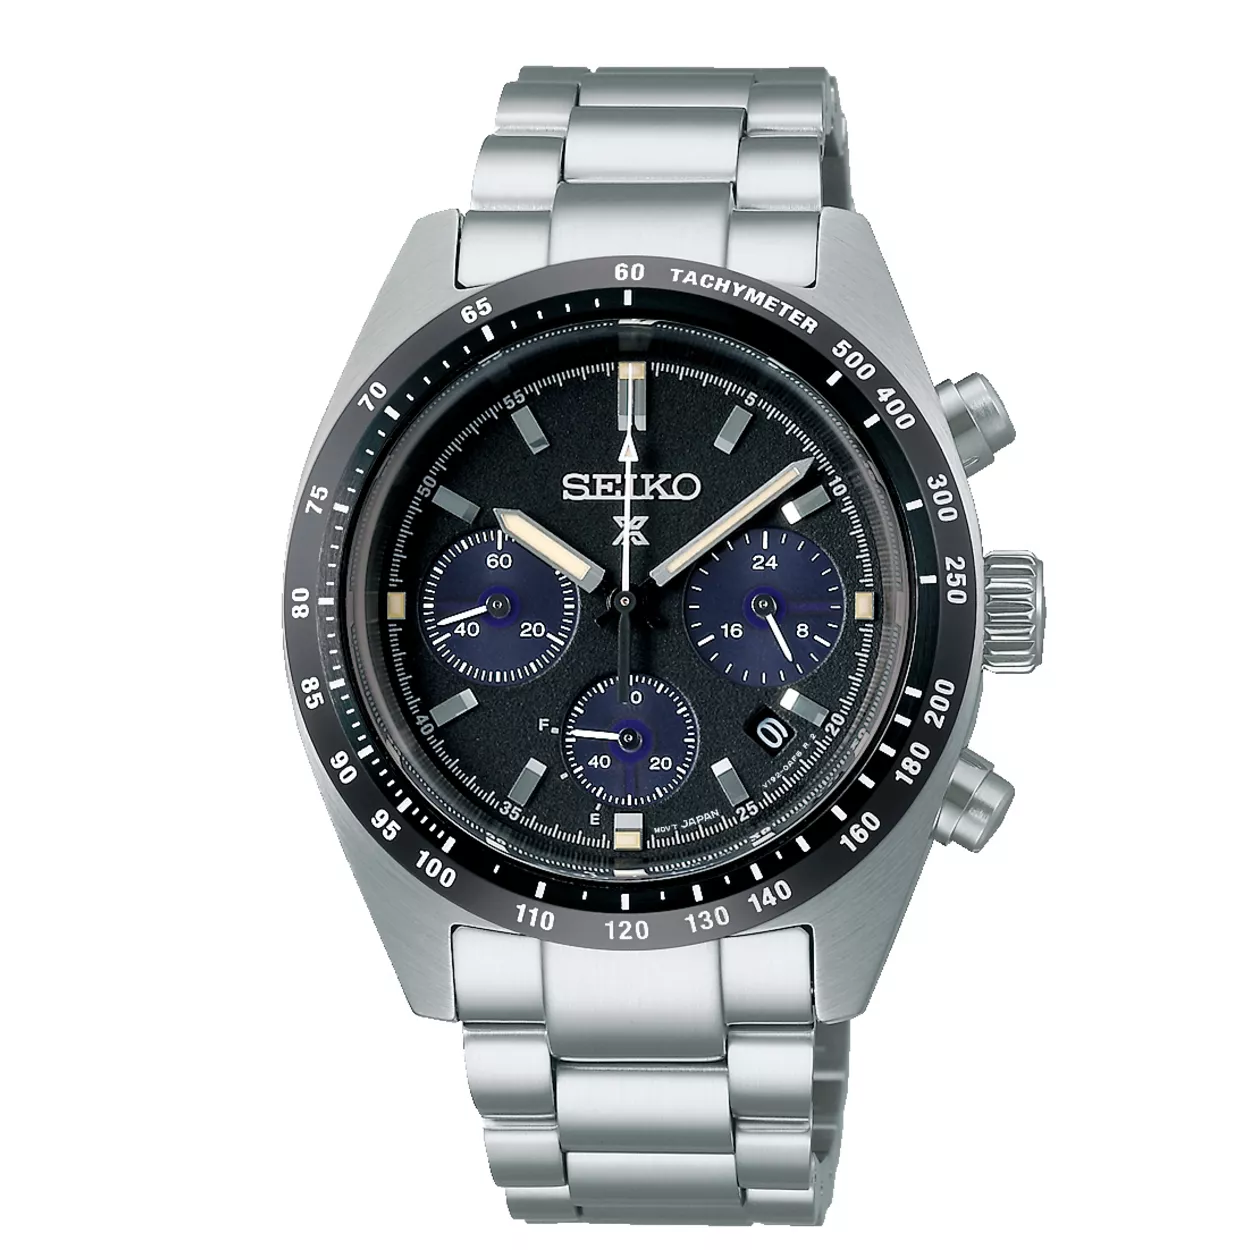 Seiko SSC819P1 Horloge Prospex Solar Chronograaf staal zilverkleurig-zwart 39 mm